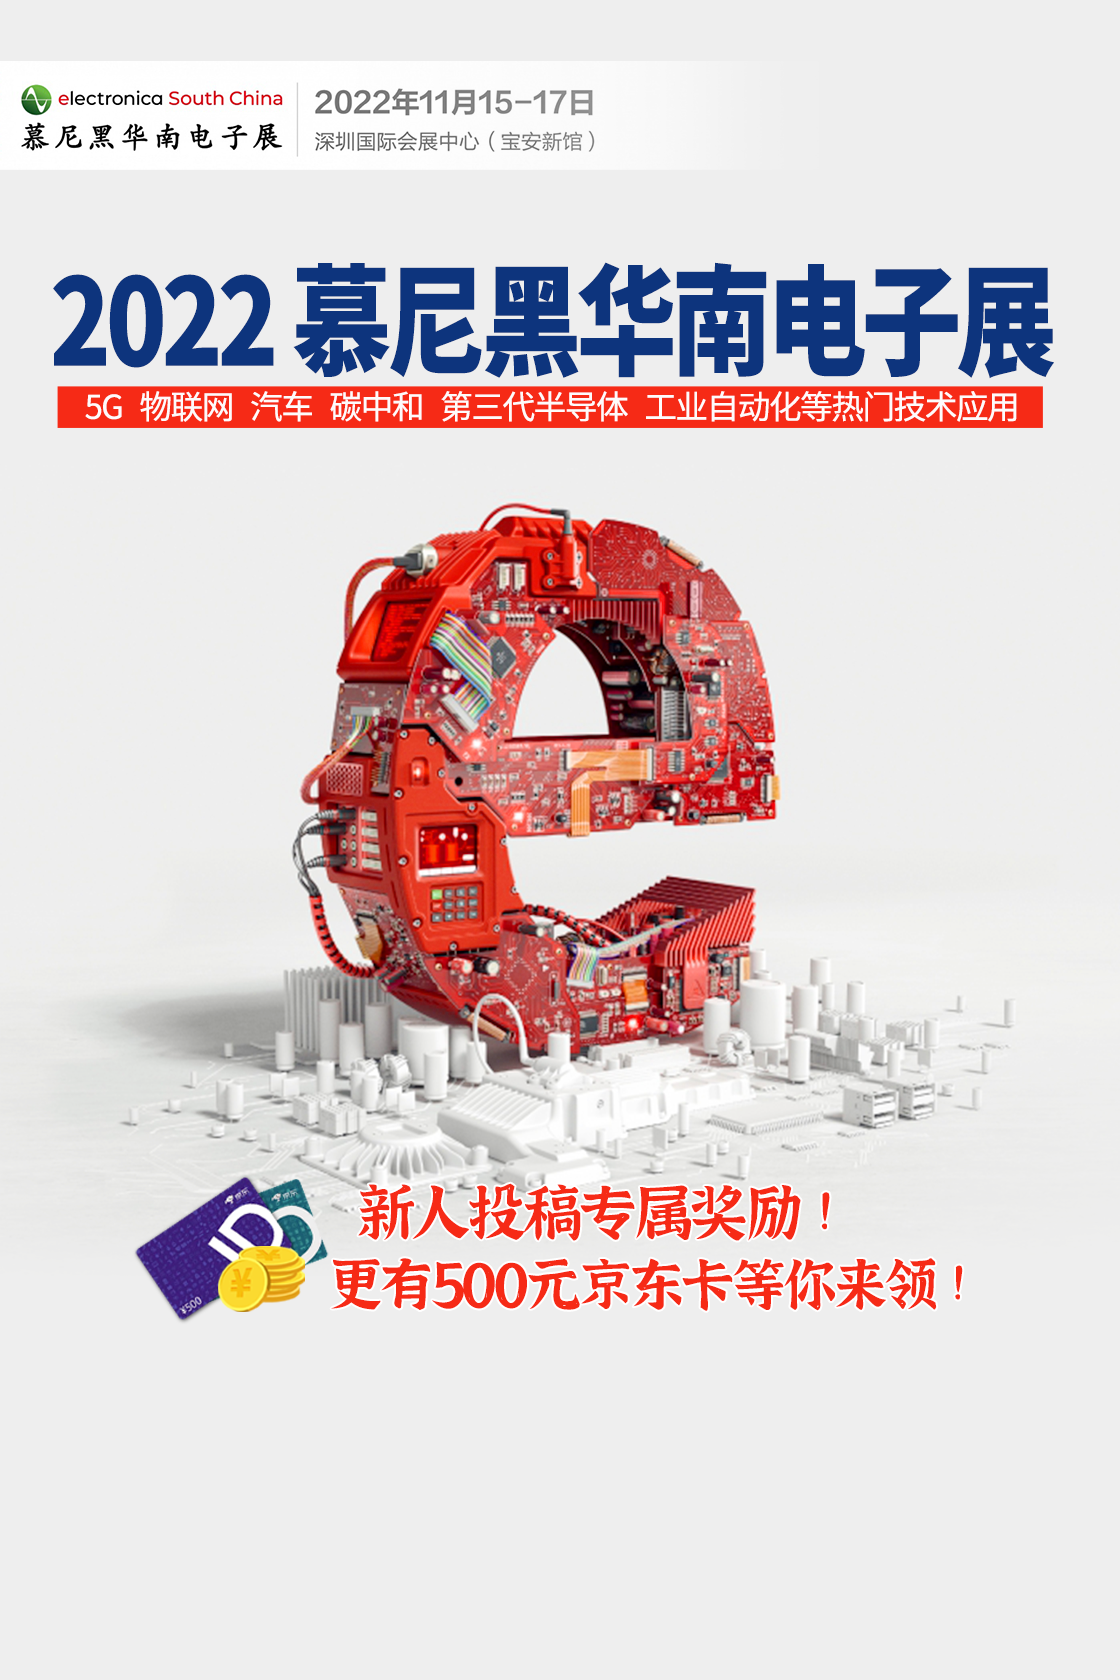 慕尼黑华南电子展，将于11月15-17日在深圳国际会展中心举办！#2022慕尼黑华南电子展 